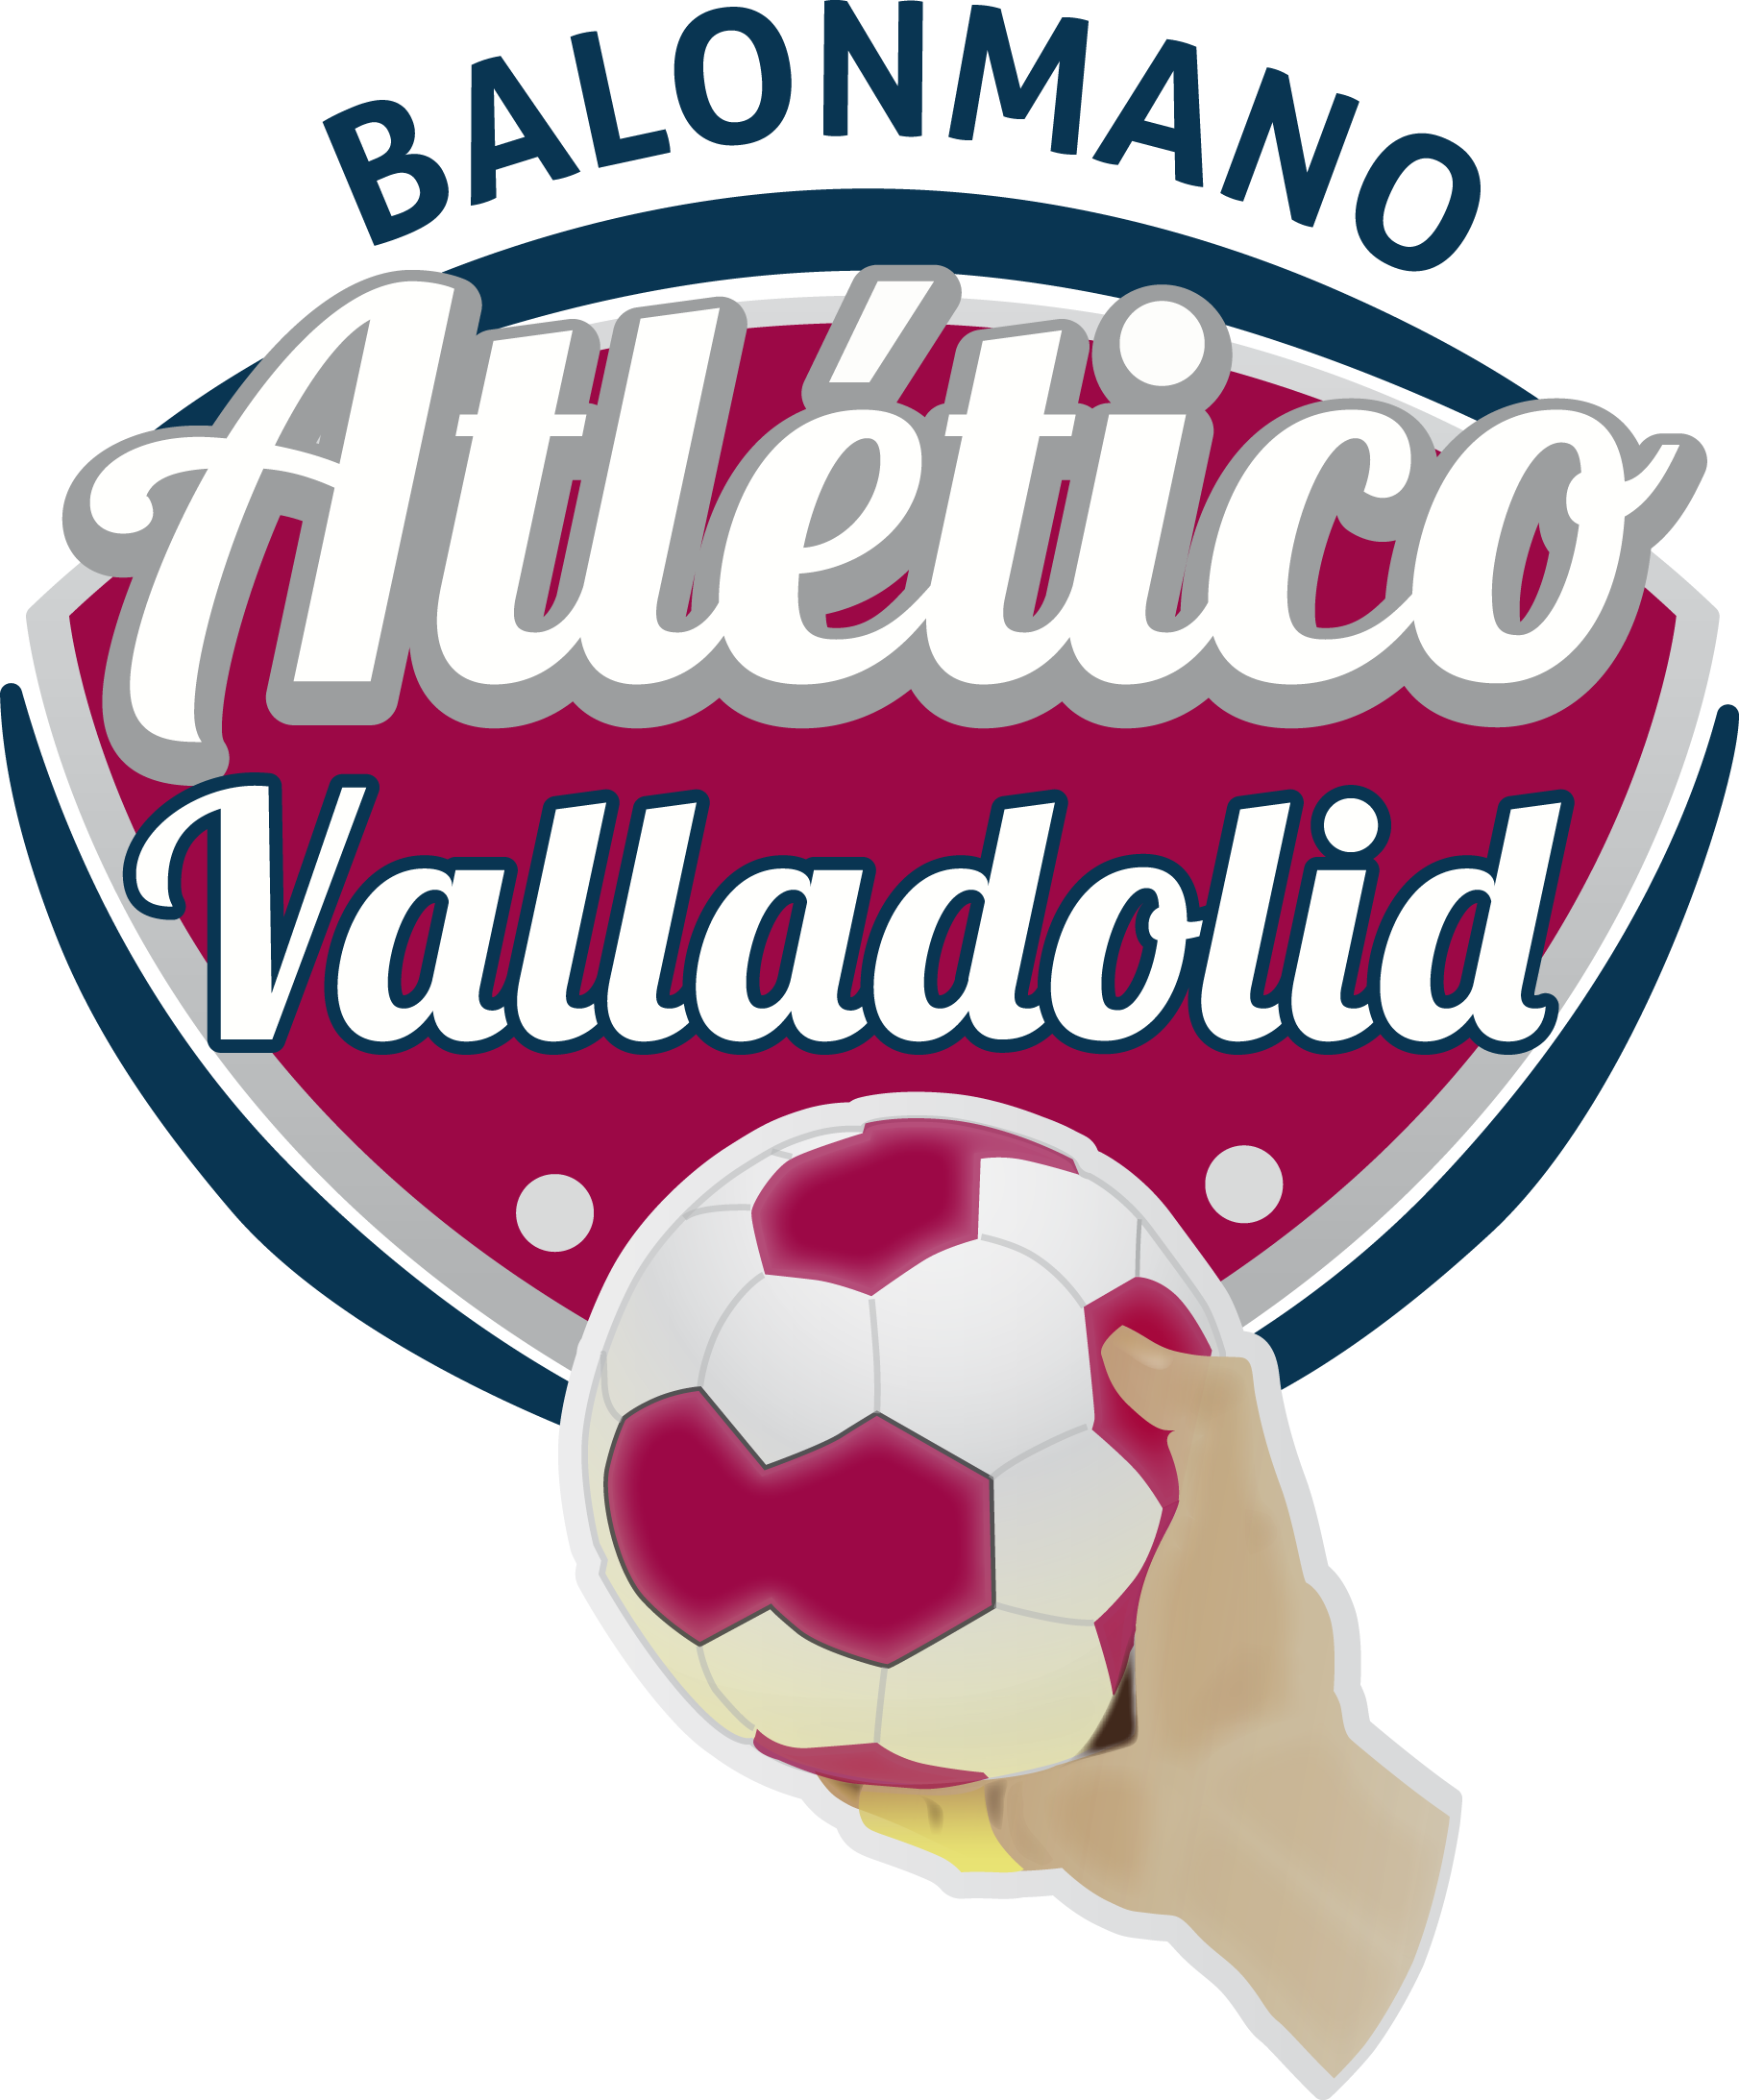 Club Balonmano Atlético Valladolid